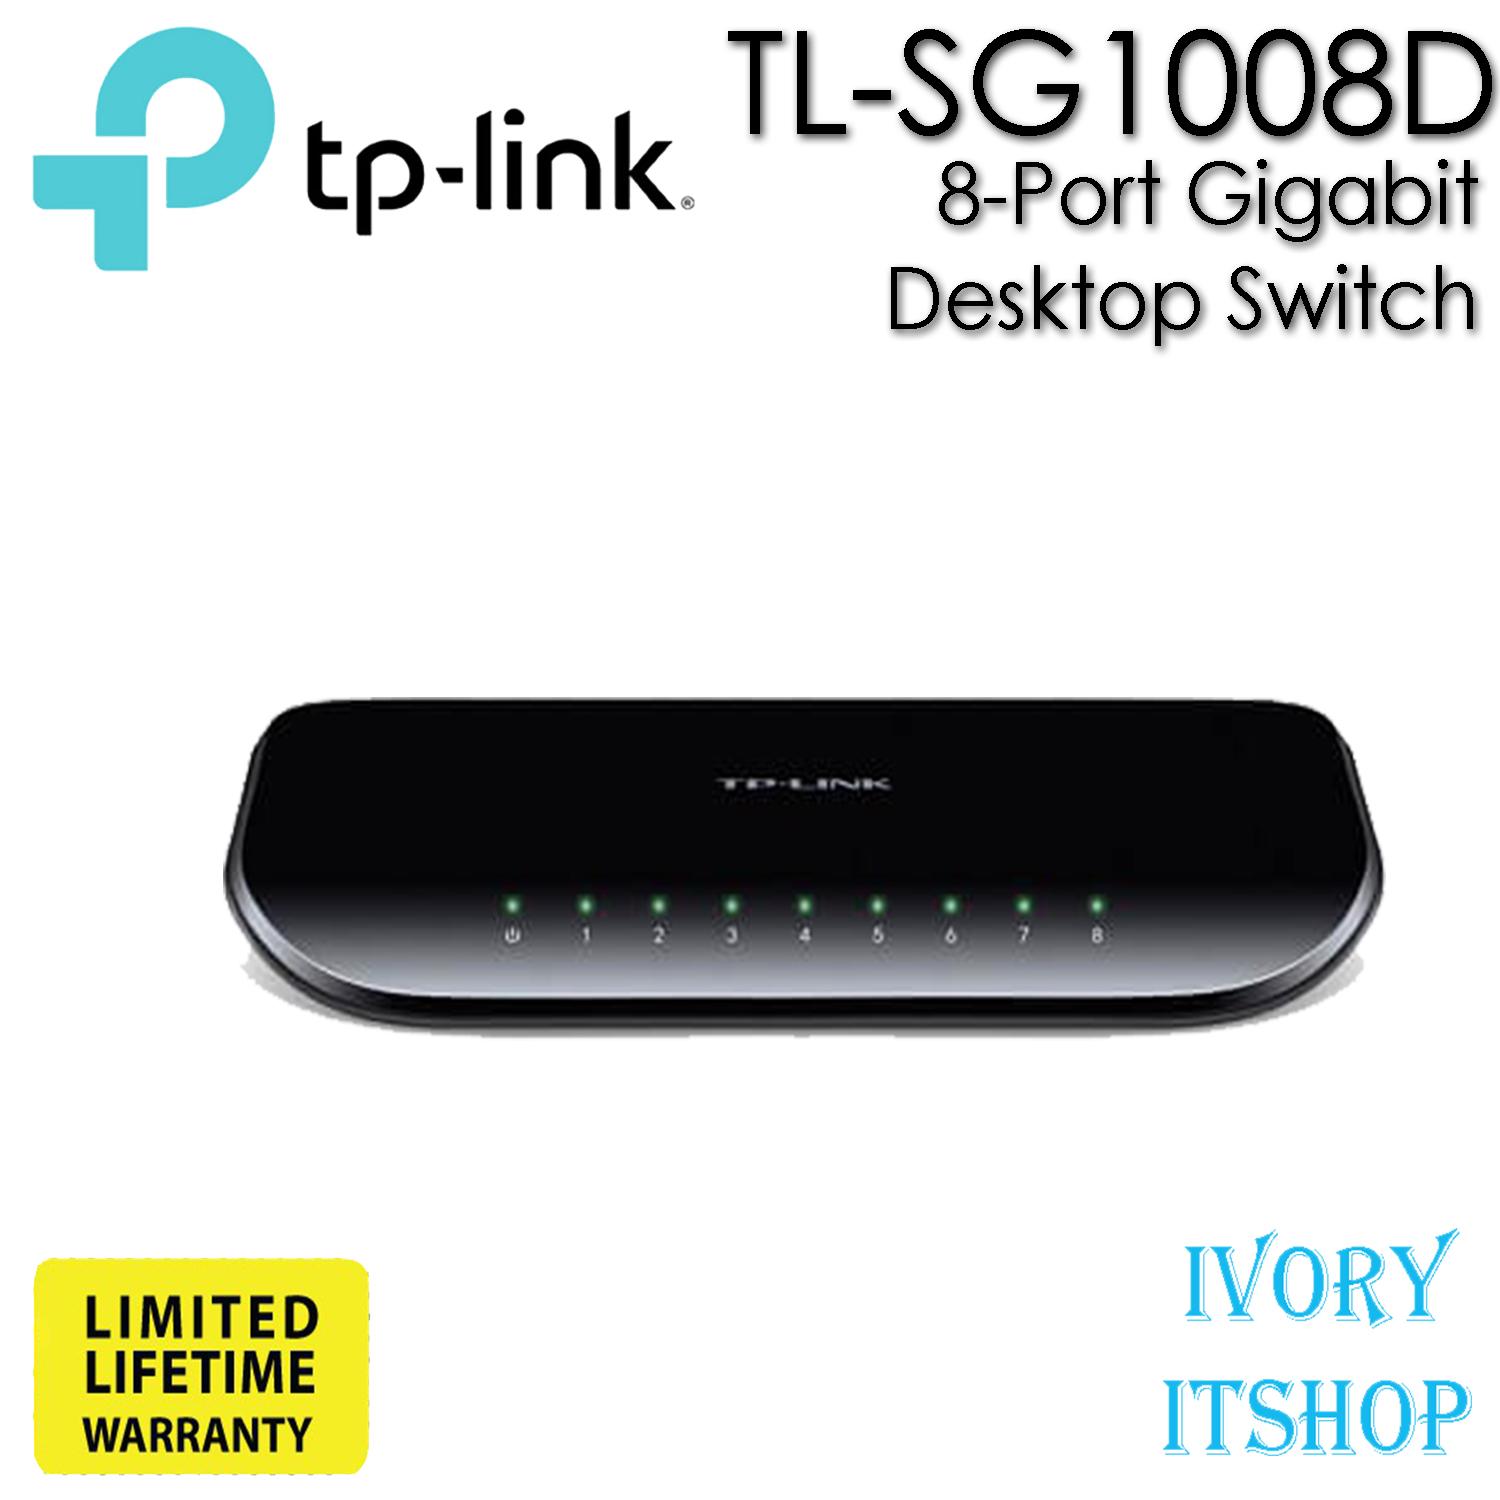 TP-Link  TL-SG1008D 8-Port Gigabit Desktop Switch SG1008D/ivoryitshop